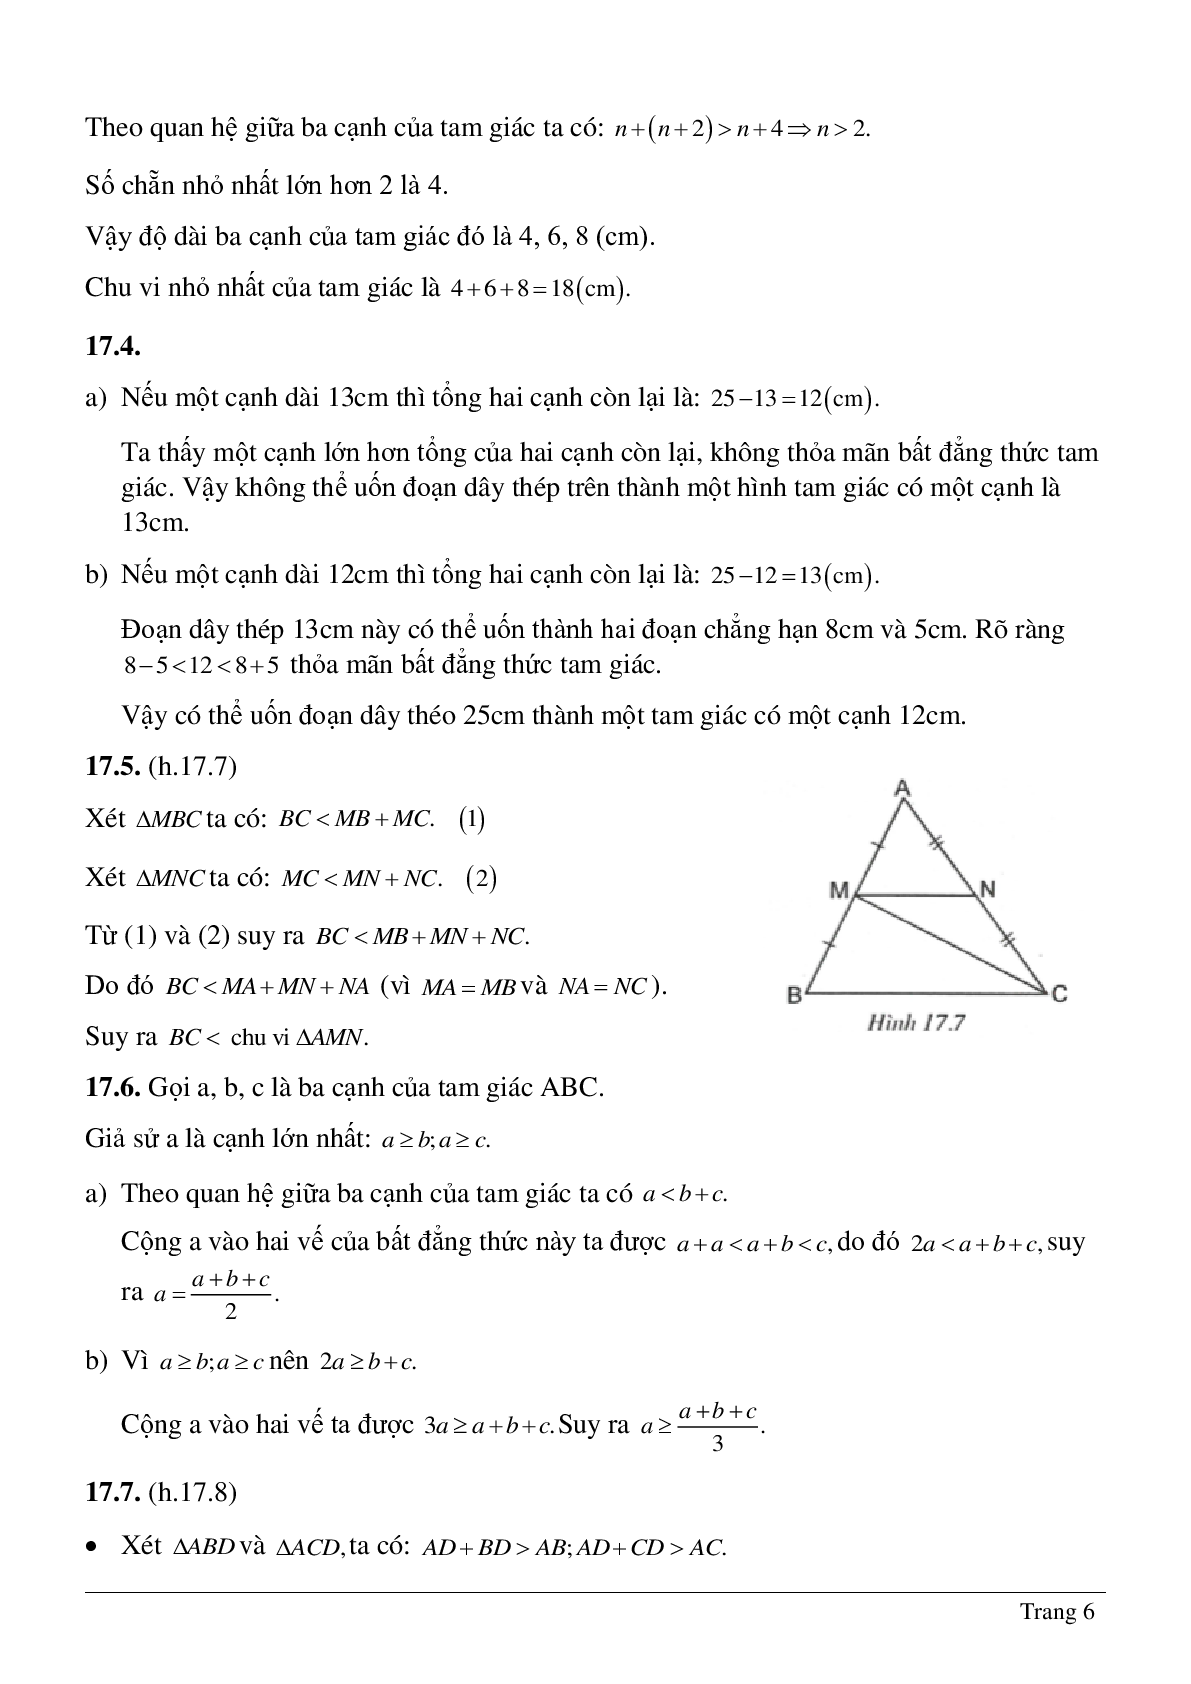 Lý thuyết và hệ thống bài tập tự luyện về Quan hệ giữa ba cạnh của một tam giác hay nhất (trang 6)